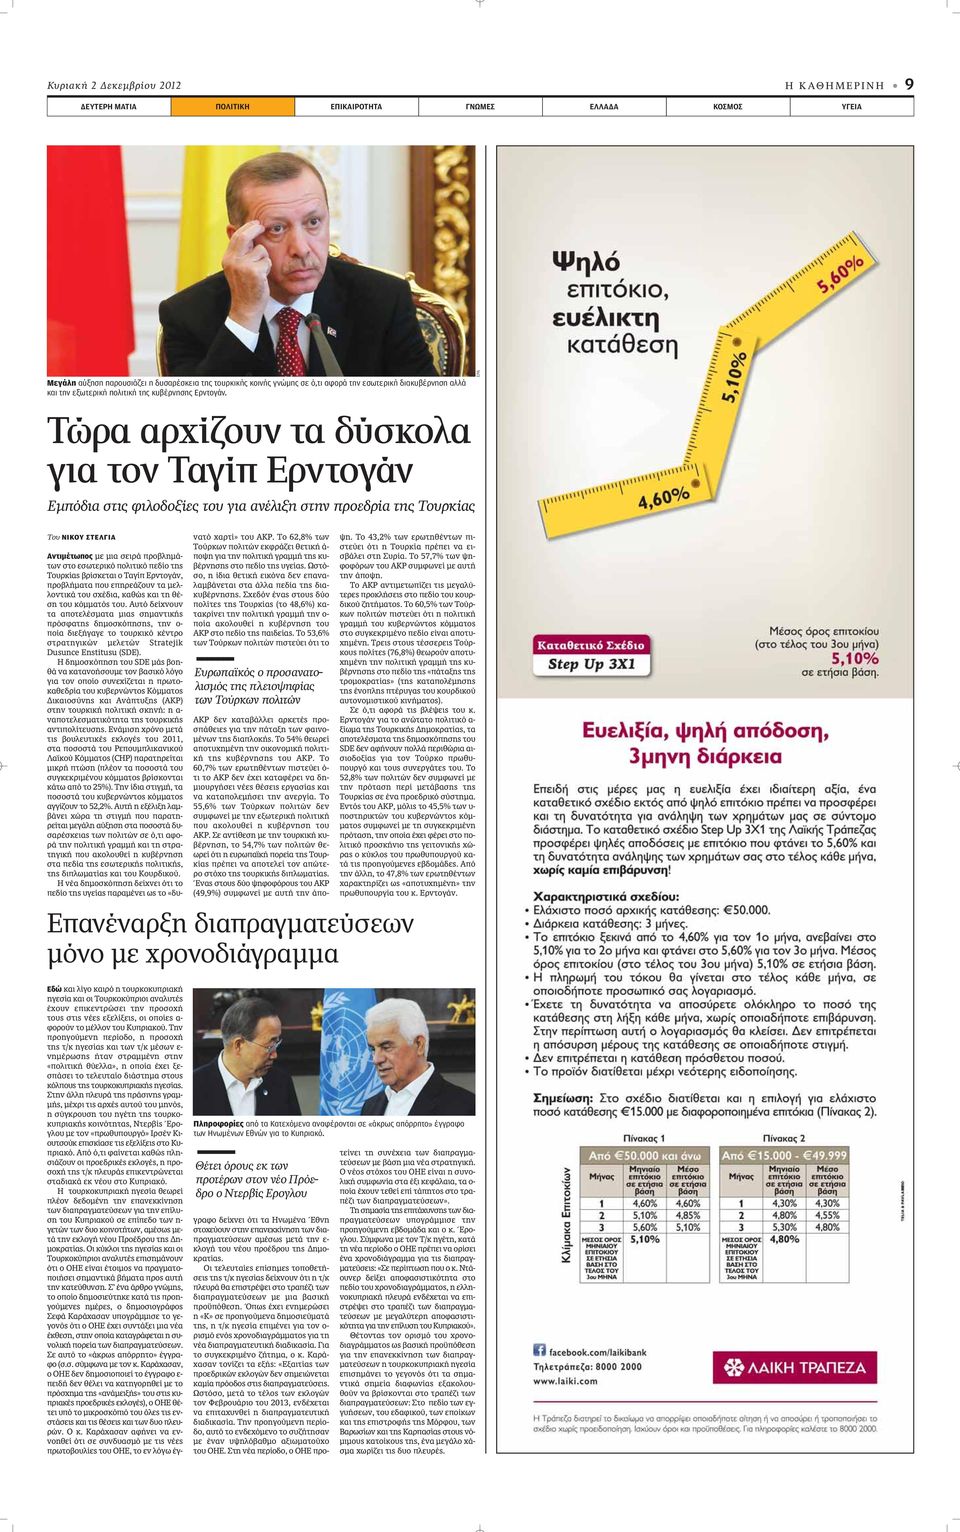 EPA Τώρα αρχίζουν τα δύσκολα για τον Ταγίπ Ερντογάν Εμπόδια στις φιλοδοξίες του για ανέλιξη στην προεδρία της Τουρκίας Του ΝΙΚΟΥ ΣΤΕΛΓΙΑ Αντιμέτωπος ÌÂ ÌÈ ÛÂÈÚ appleúô ÏËÌ - ÙˆÓ ÛÙÔ ÂÛˆÙÂÚÈÎfi